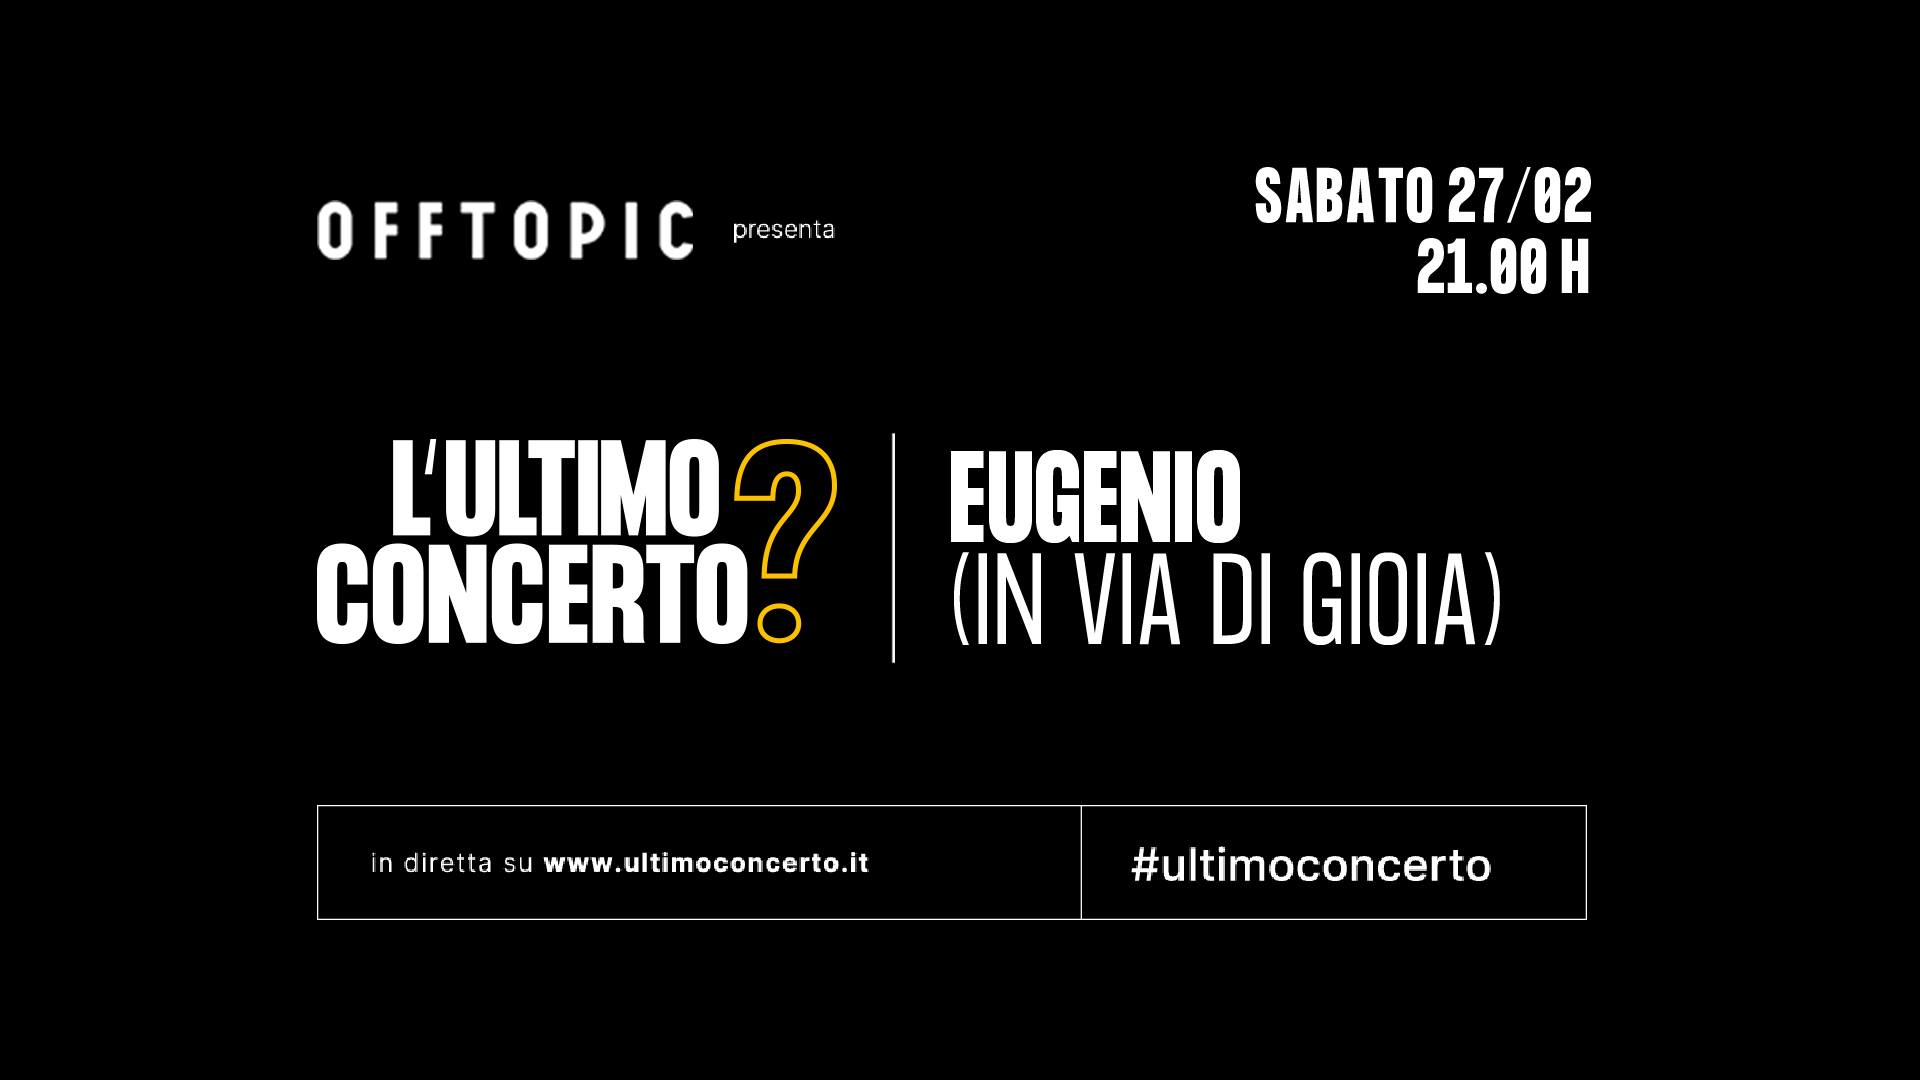 Eugenio (in Via Di Gioia), L'Ultimo Concerto? Off Topic di Torino